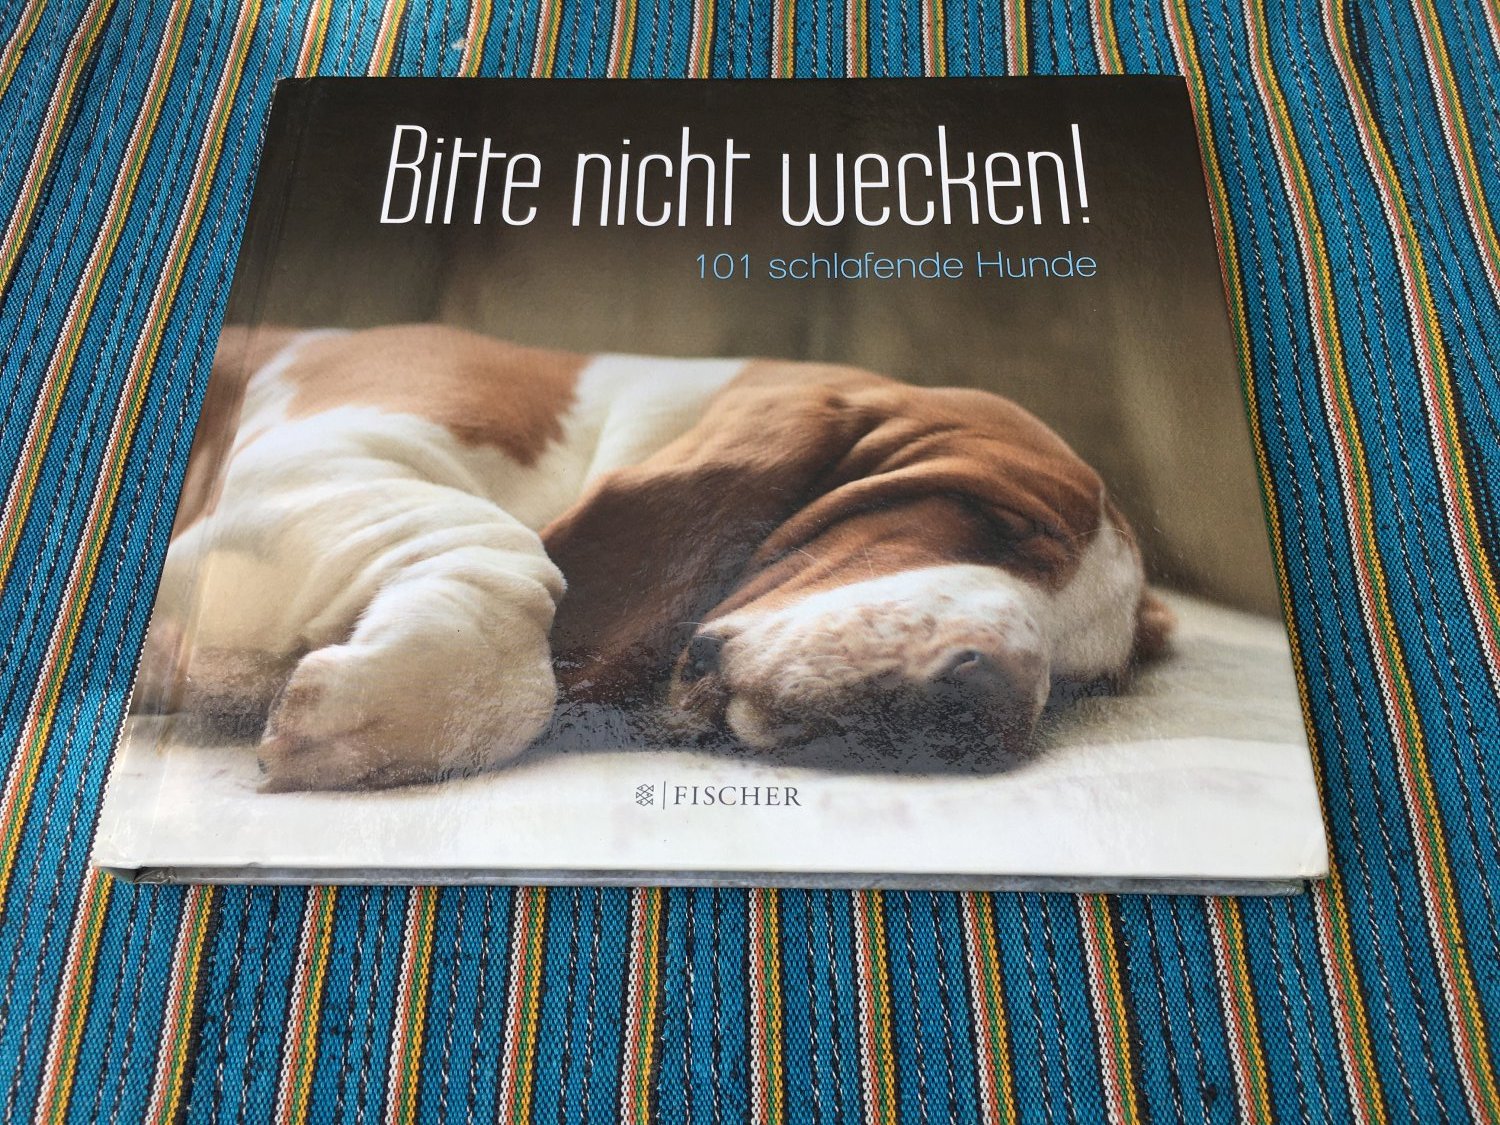 S. Fischer Verlag, Bitte nicht wecken - 101 schlafende Hunde“ – Bücher gebraucht, antiquarisch neu kaufen